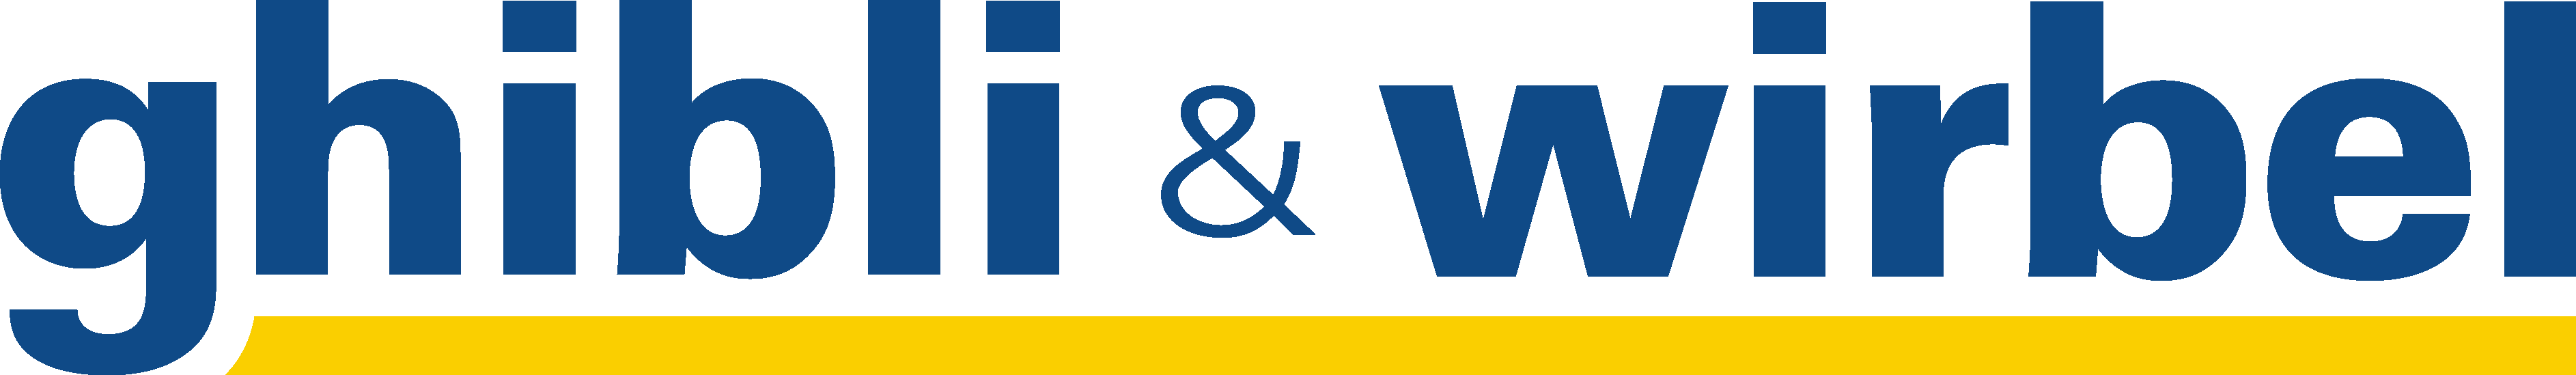 ghibli.cz - PROFESIONÁLNÍ ÚKLIDOVÁ TECHNIKA - logo